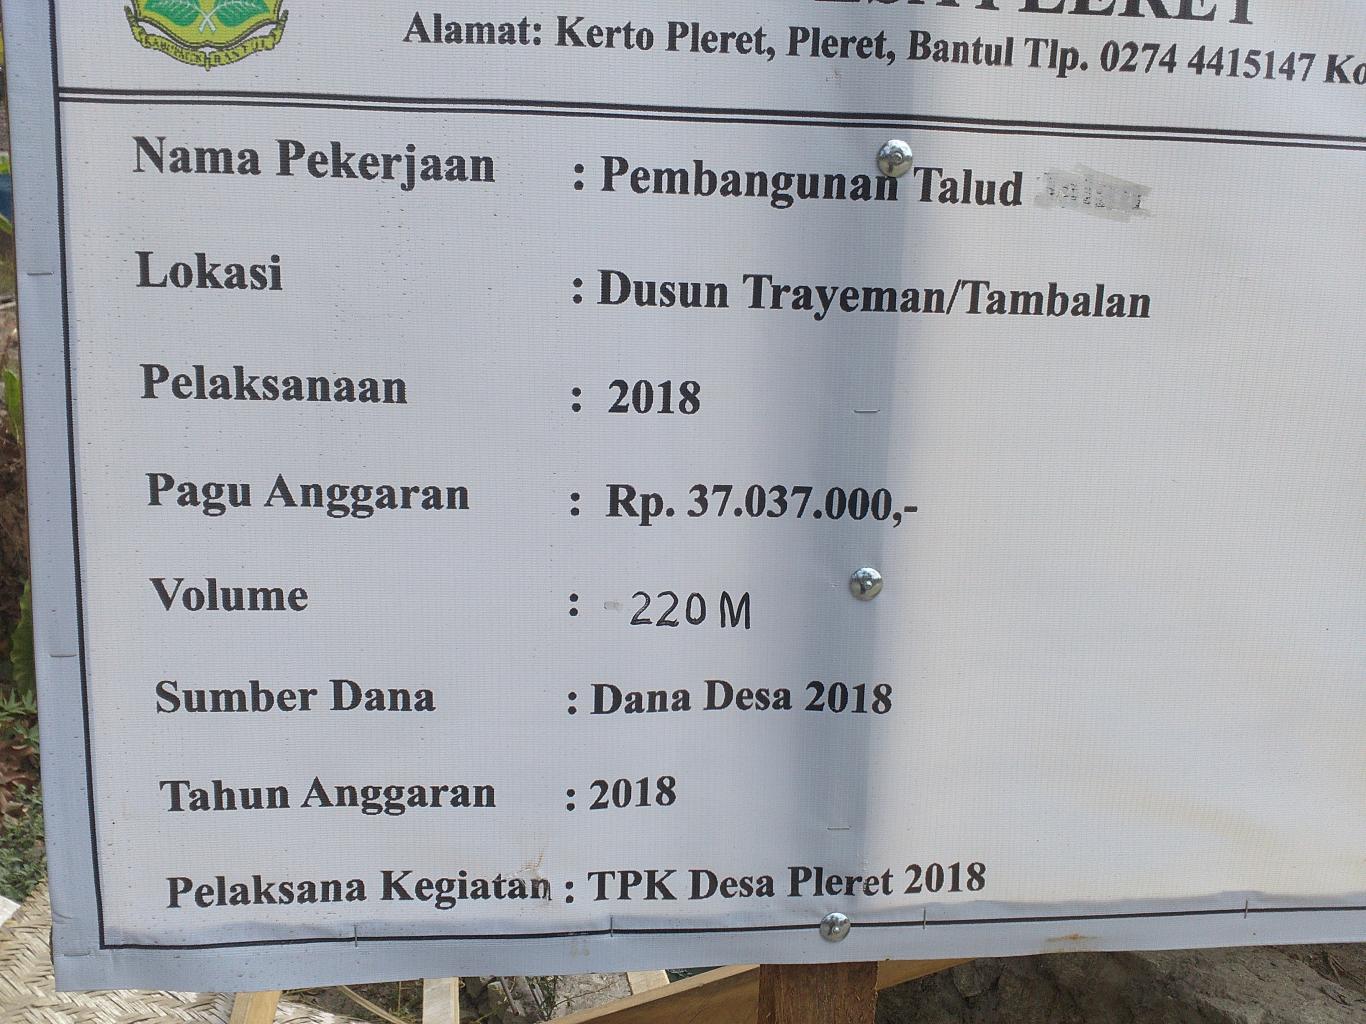 Pembangunan Talud Dusun Trayeman TA 2018